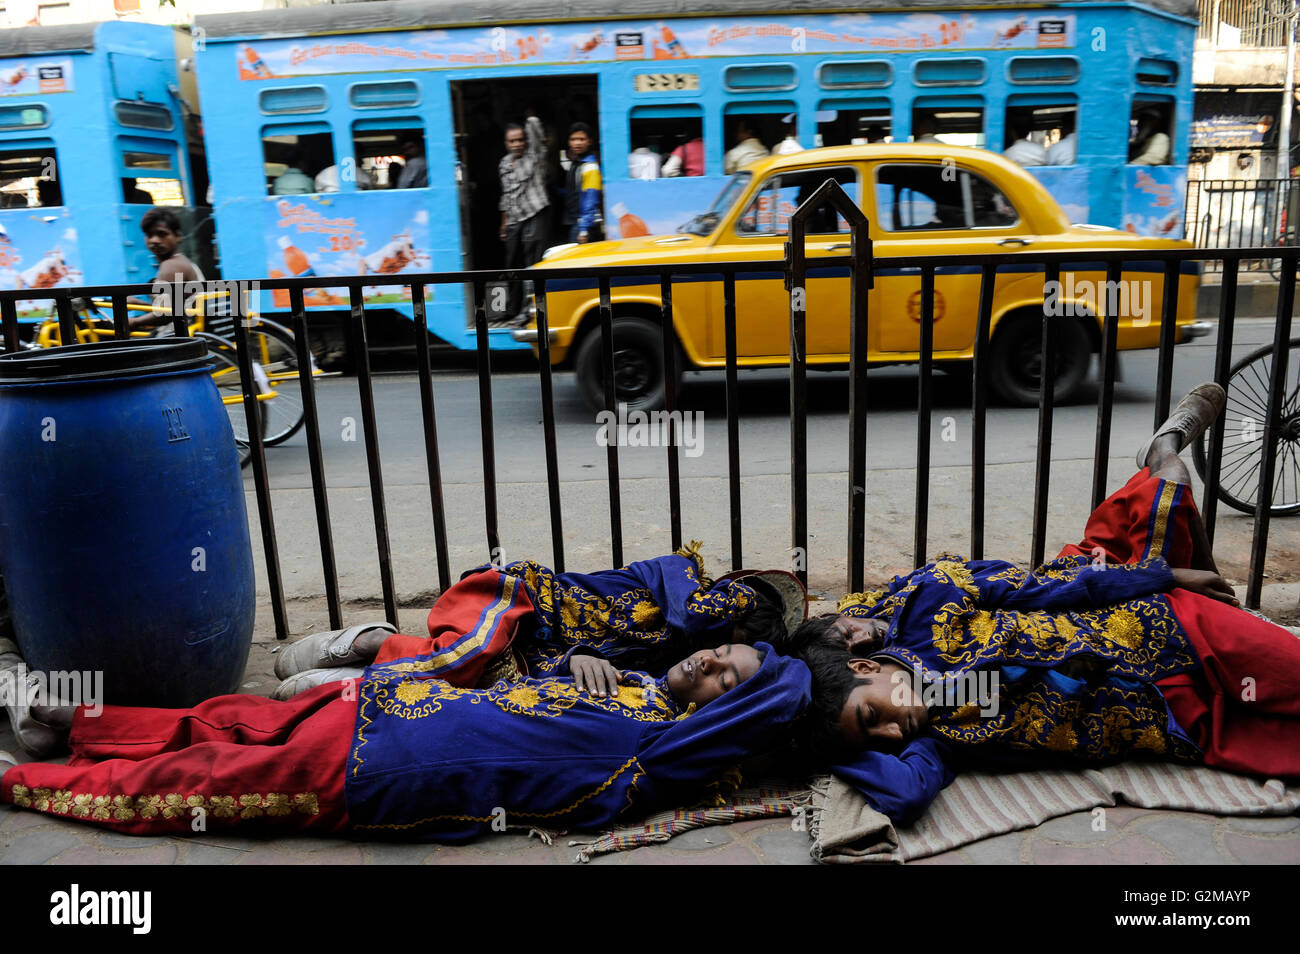 INDIA Westbengal, Calcutta, su MG Road sleeping musicisti di brass band / INDIEN, Westbengalen, Calcutta, auf der Mahatma Gandhi Road schlafende Musiker in uniforme einer Blaskapelle Foto Stock